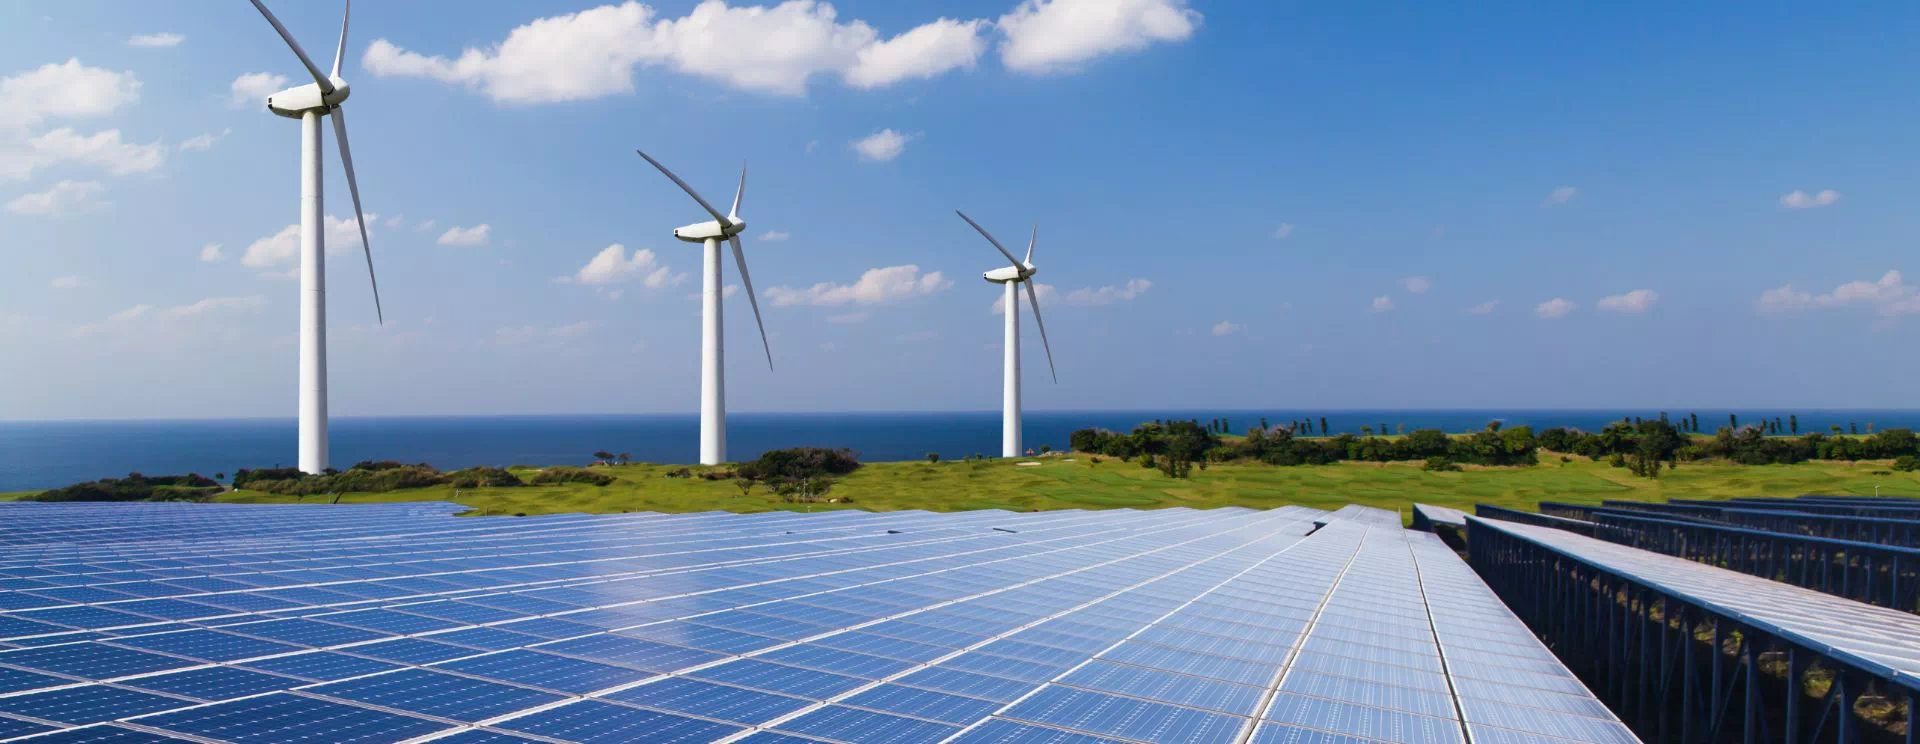 energia odnawialna wiatraki panele słoneczne